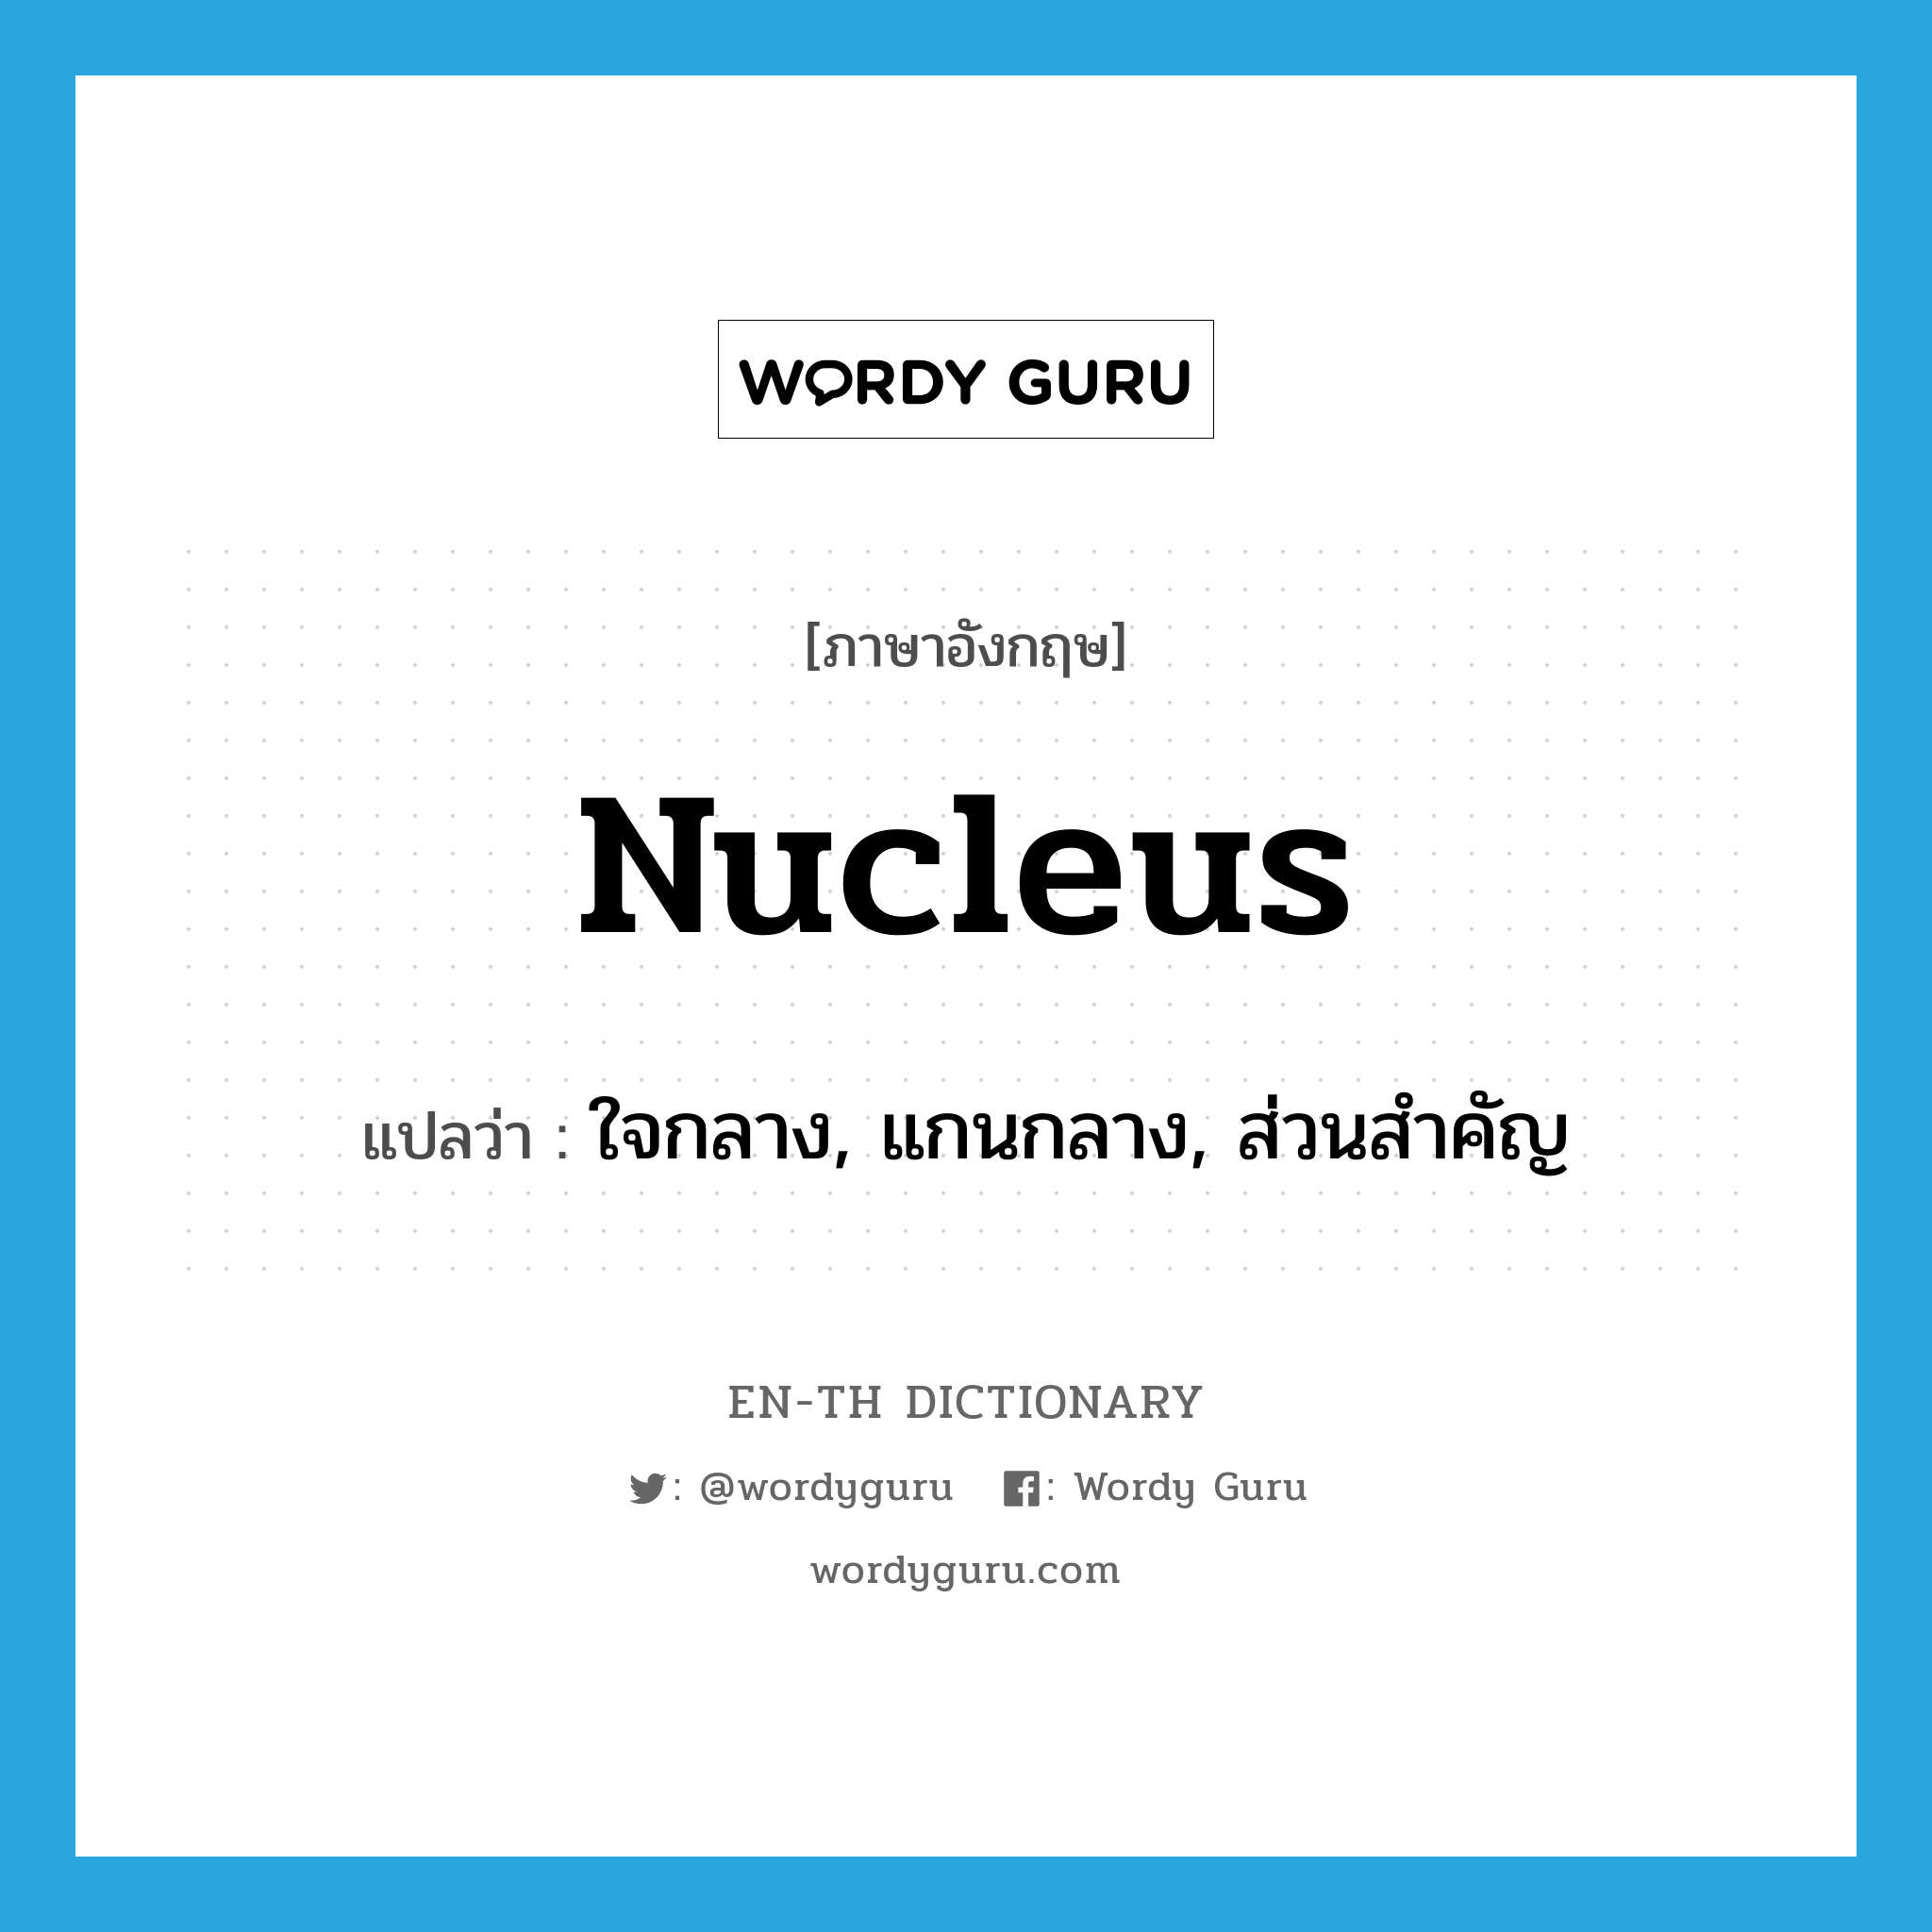 ใจกลาง, แกนกลาง, ส่วนสำคัญ ภาษาอังกฤษ?, คำศัพท์ภาษาอังกฤษ ใจกลาง, แกนกลาง, ส่วนสำคัญ แปลว่า nucleus ประเภท N หมวด N